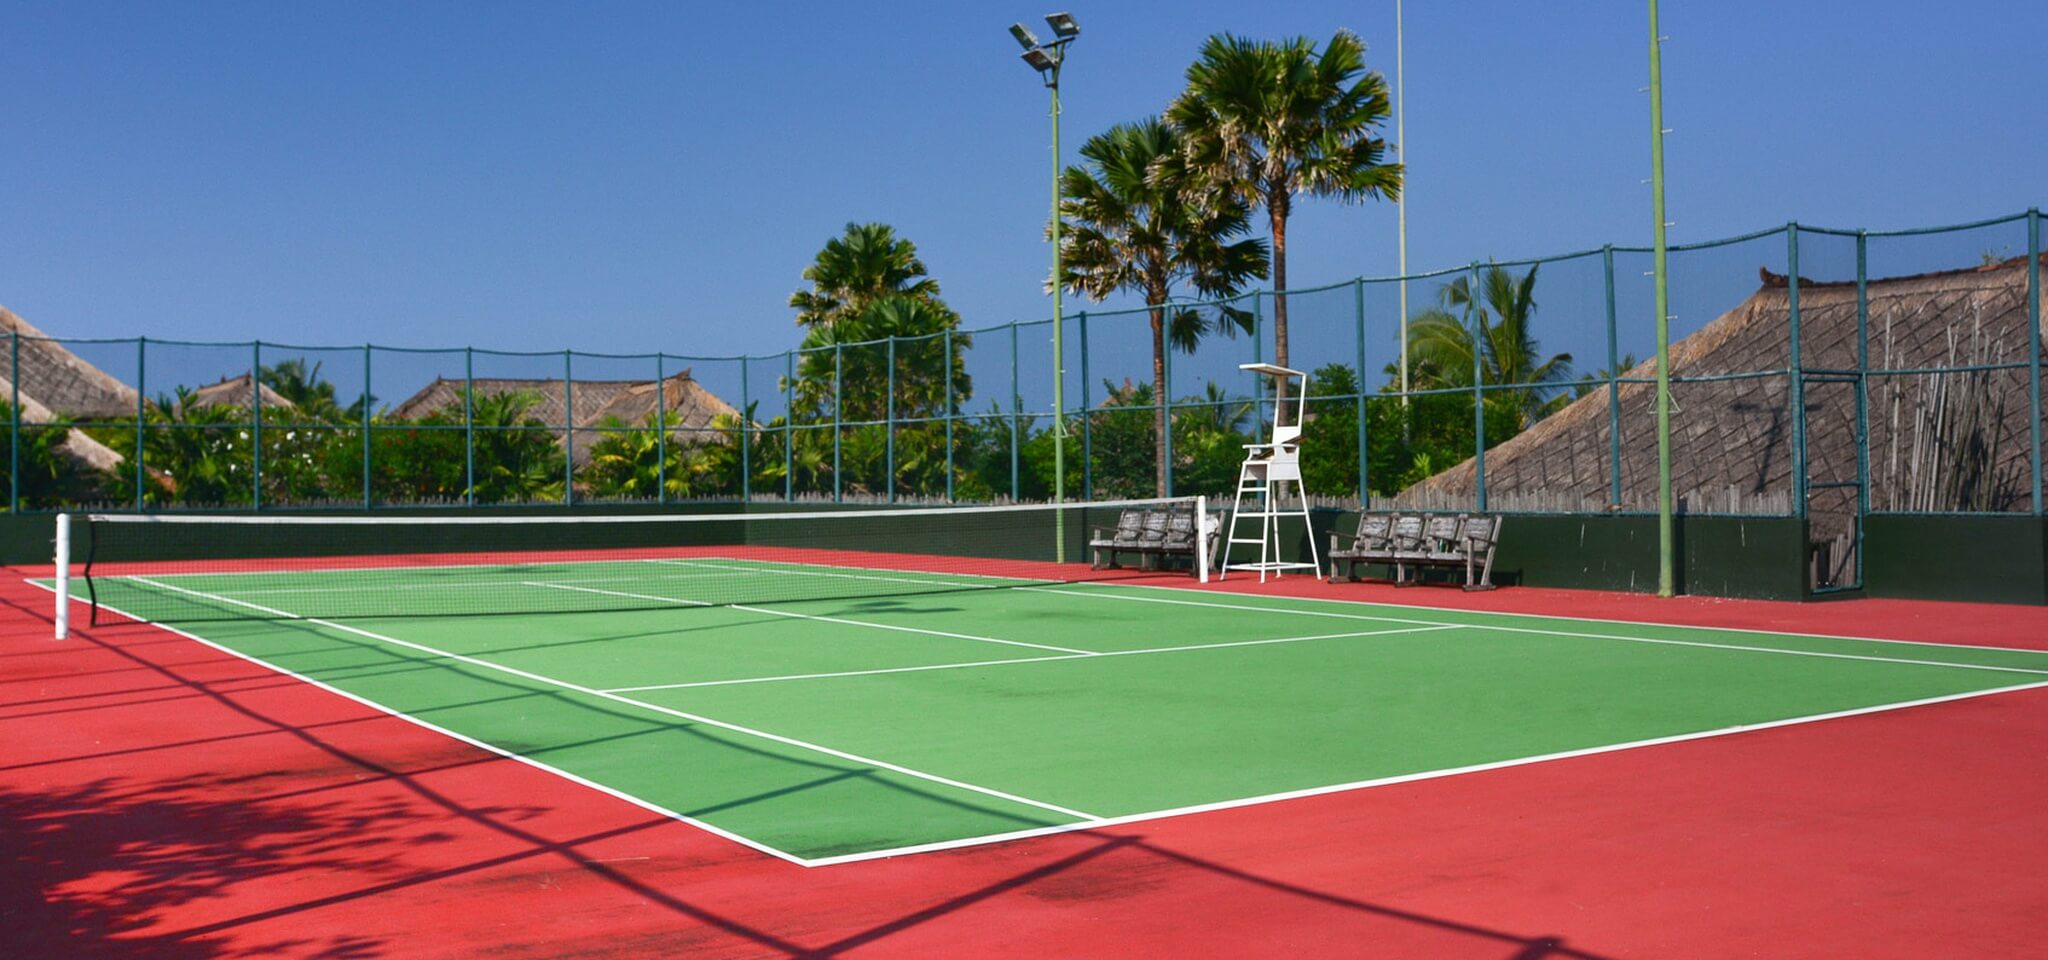 Tennis Court of Villa Waringin - Pantai Lima Estate